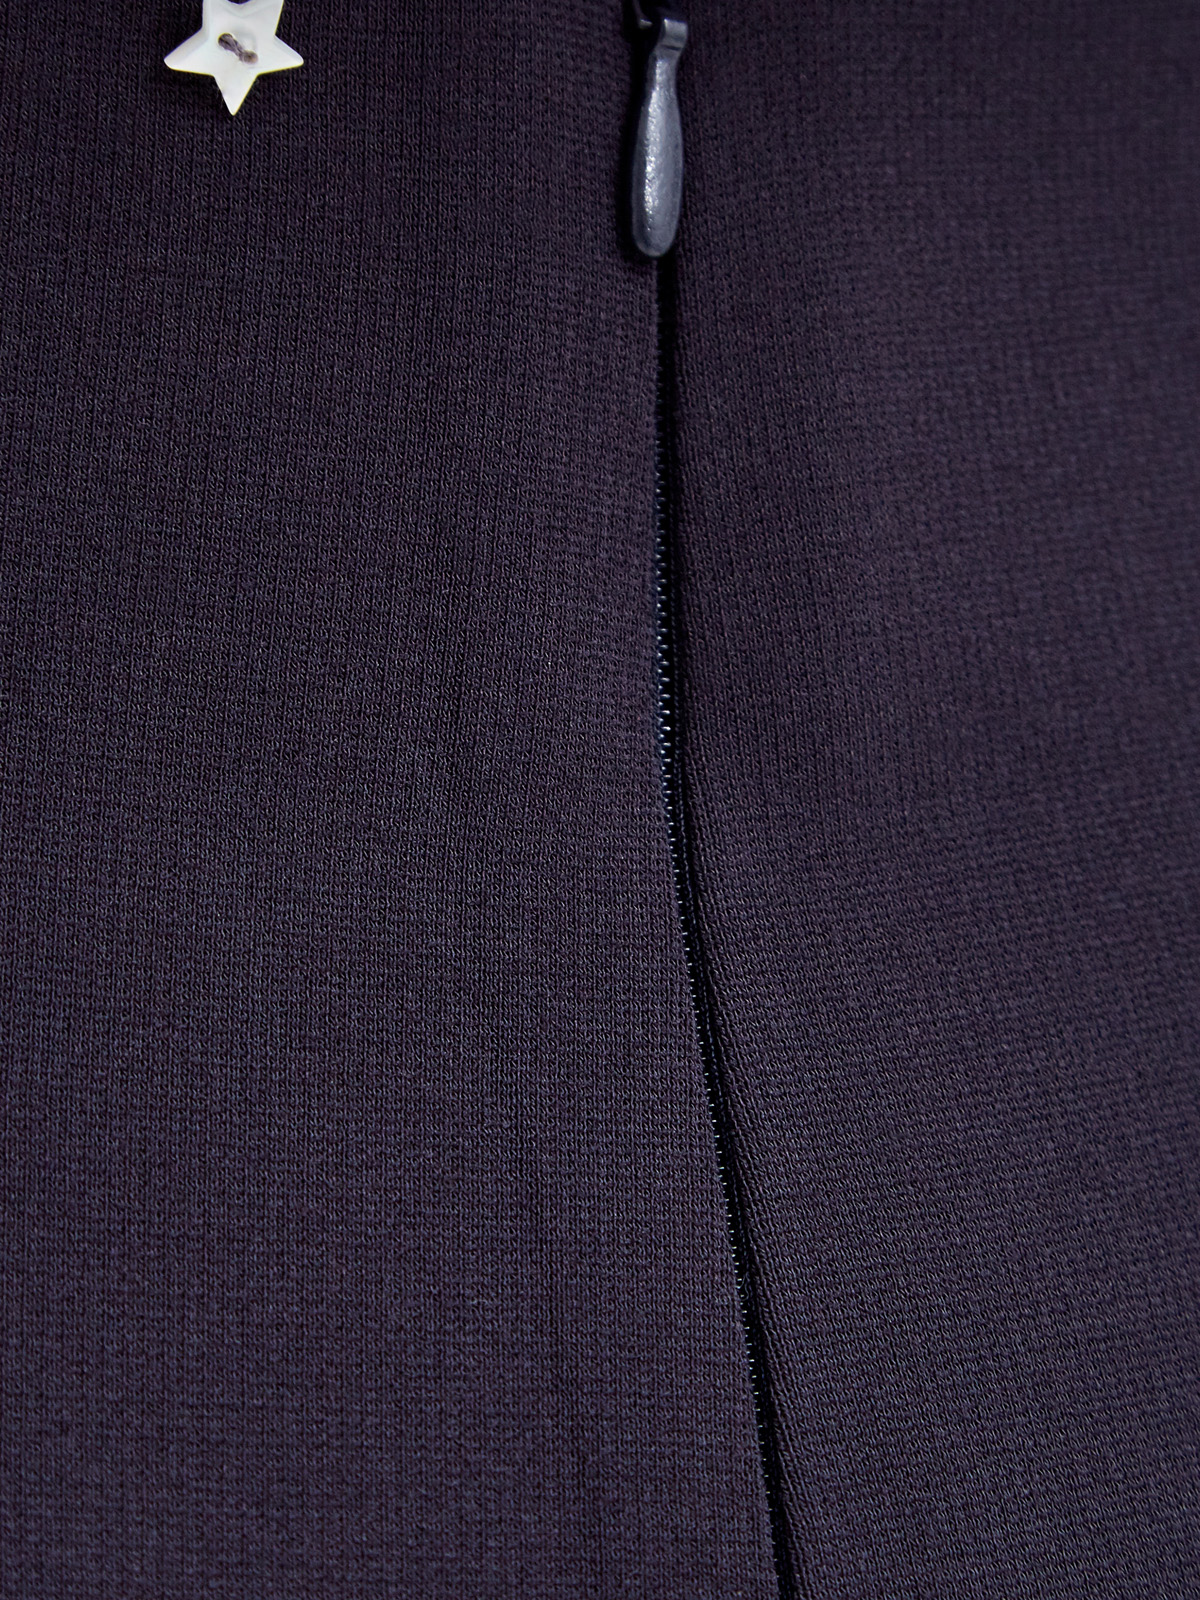 Облегающие брюки из эластичной вискозы в черном цвете LORENA ANTONIAZZI, размер 40;42;44 - фото 5